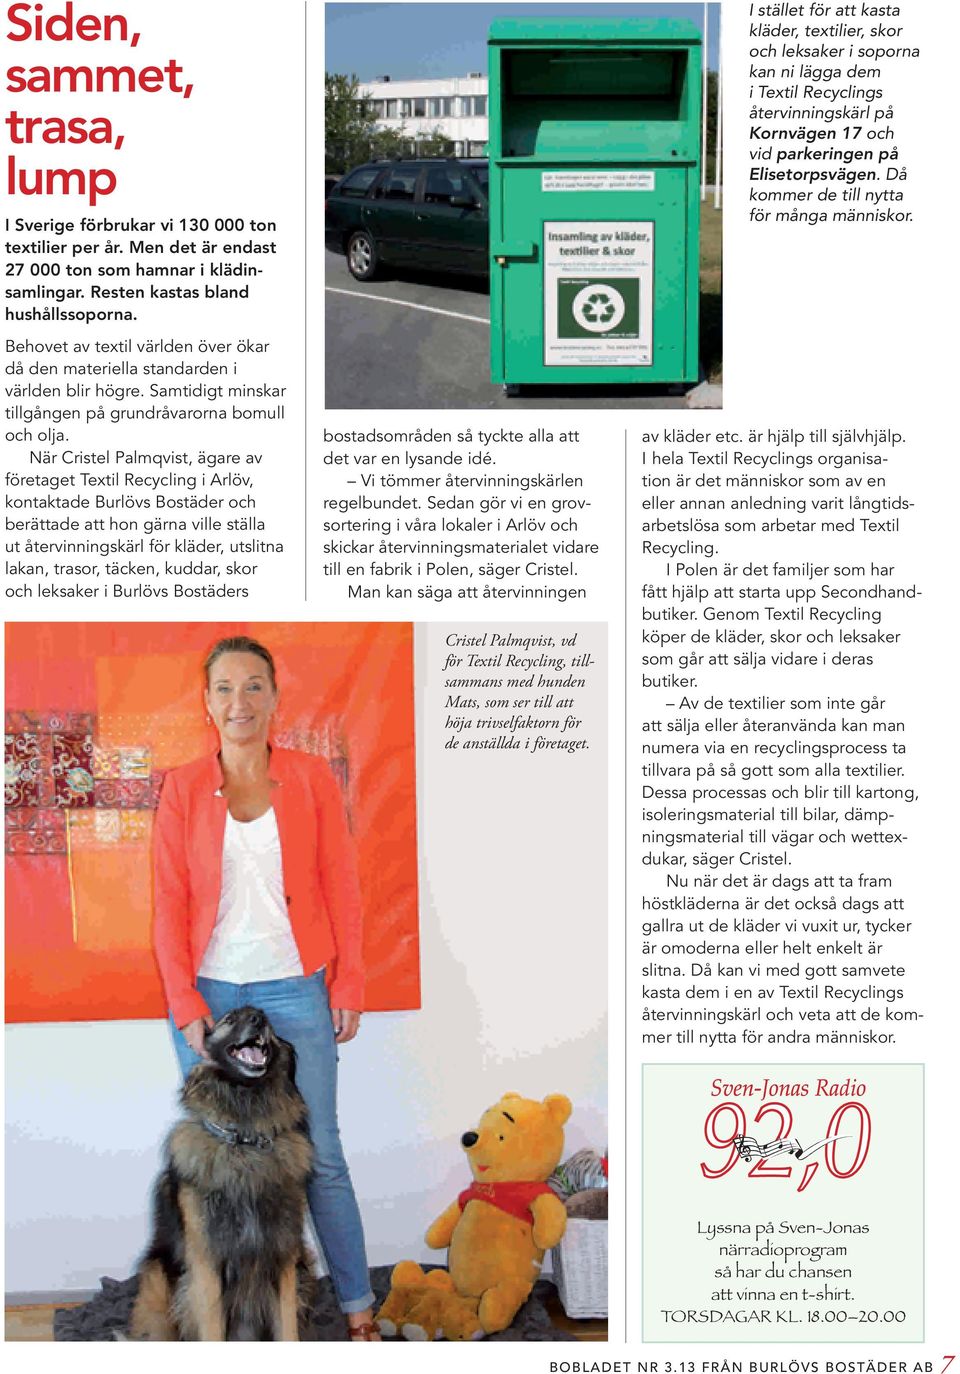 När Cristel Palmqvist, ägare av företaget Textil Recycling i Arlöv, kontaktade Burlövs Bostäder och berättade att hon gärna ville ställa ut återvinningskärl för kläder, utslitna lakan, trasor,